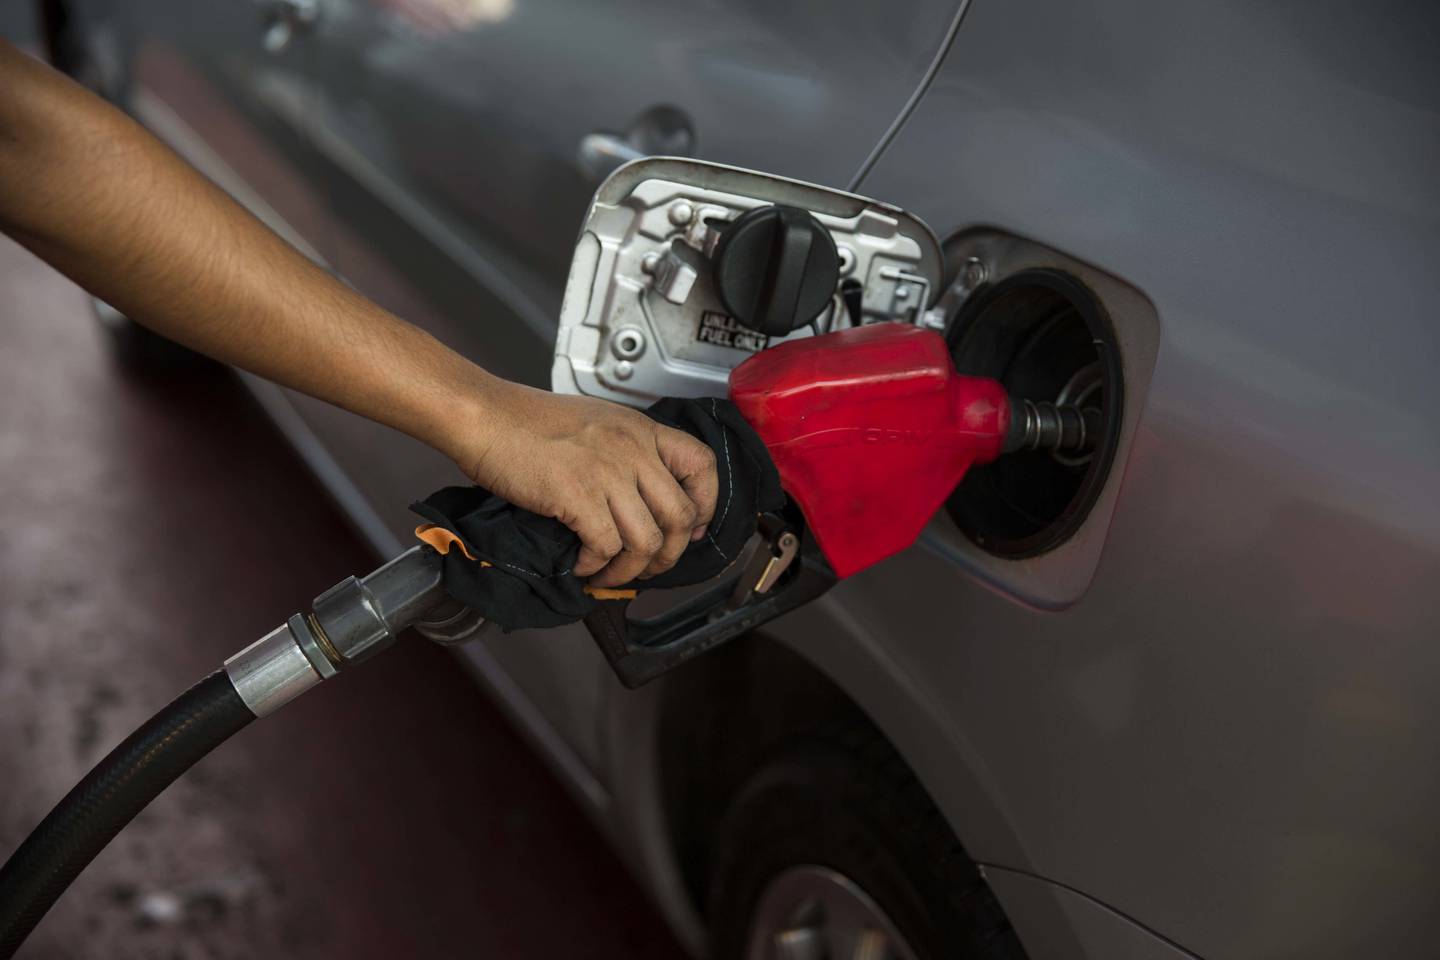 Gasolina Premium ya no tendrá estímulo fiscal complementario en la segunda semana de agosto.